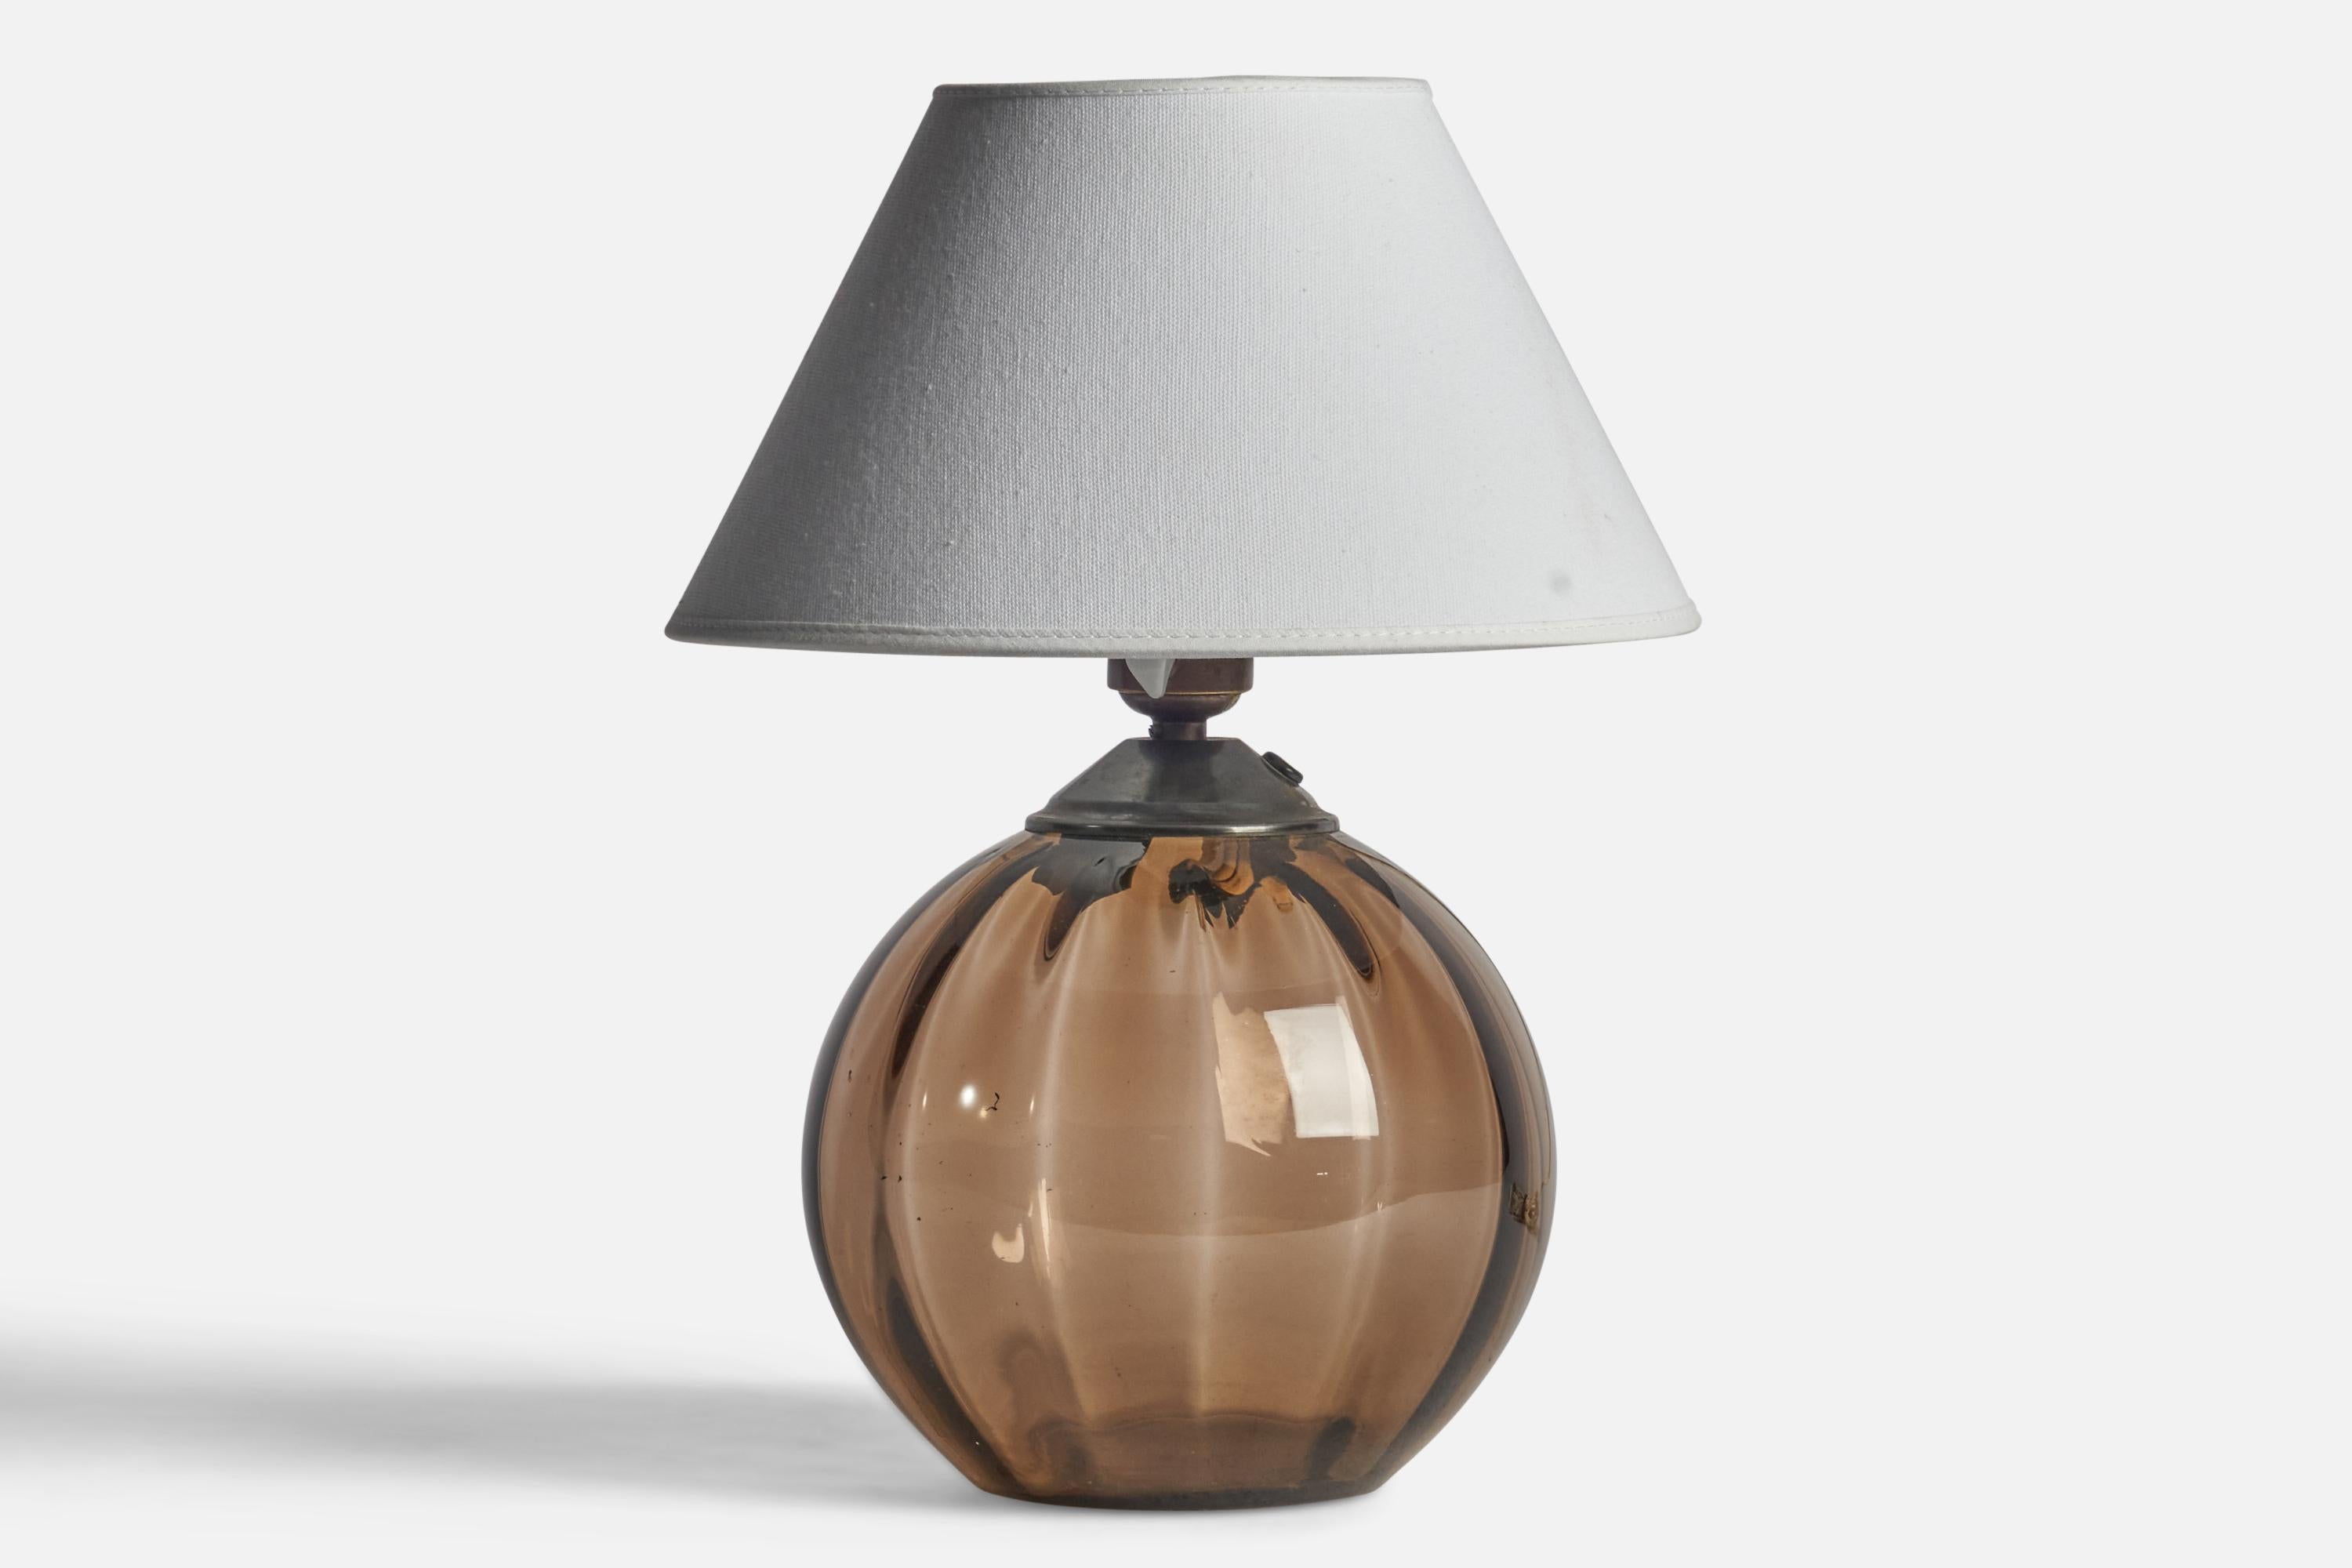 Lampe de table en verre et en laiton conçue par Edward Hald et produite par Orrefors, Suède, années 1930.

Dimensions de la lampe (pouces) : 10.25